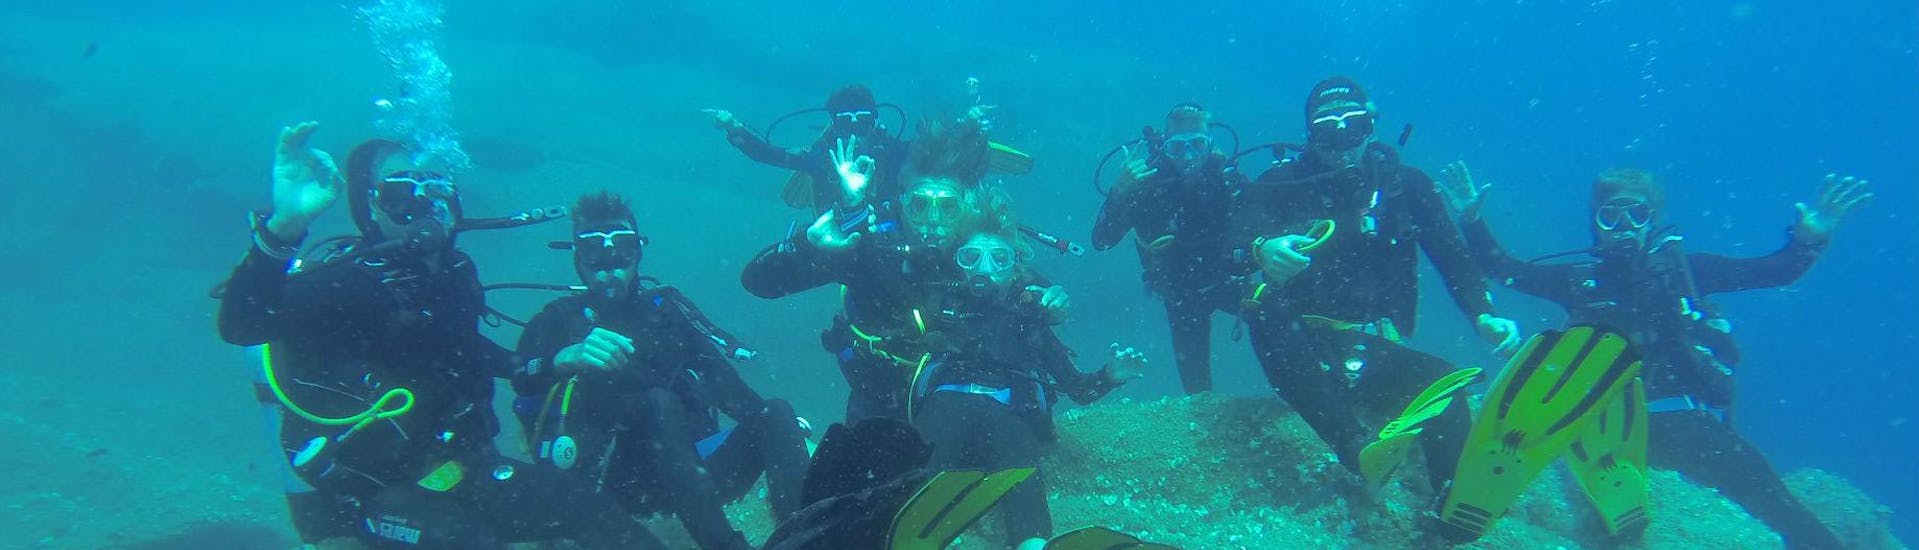 Formation plongée Open Water Diver pour Débutants à Poltu Quatu.